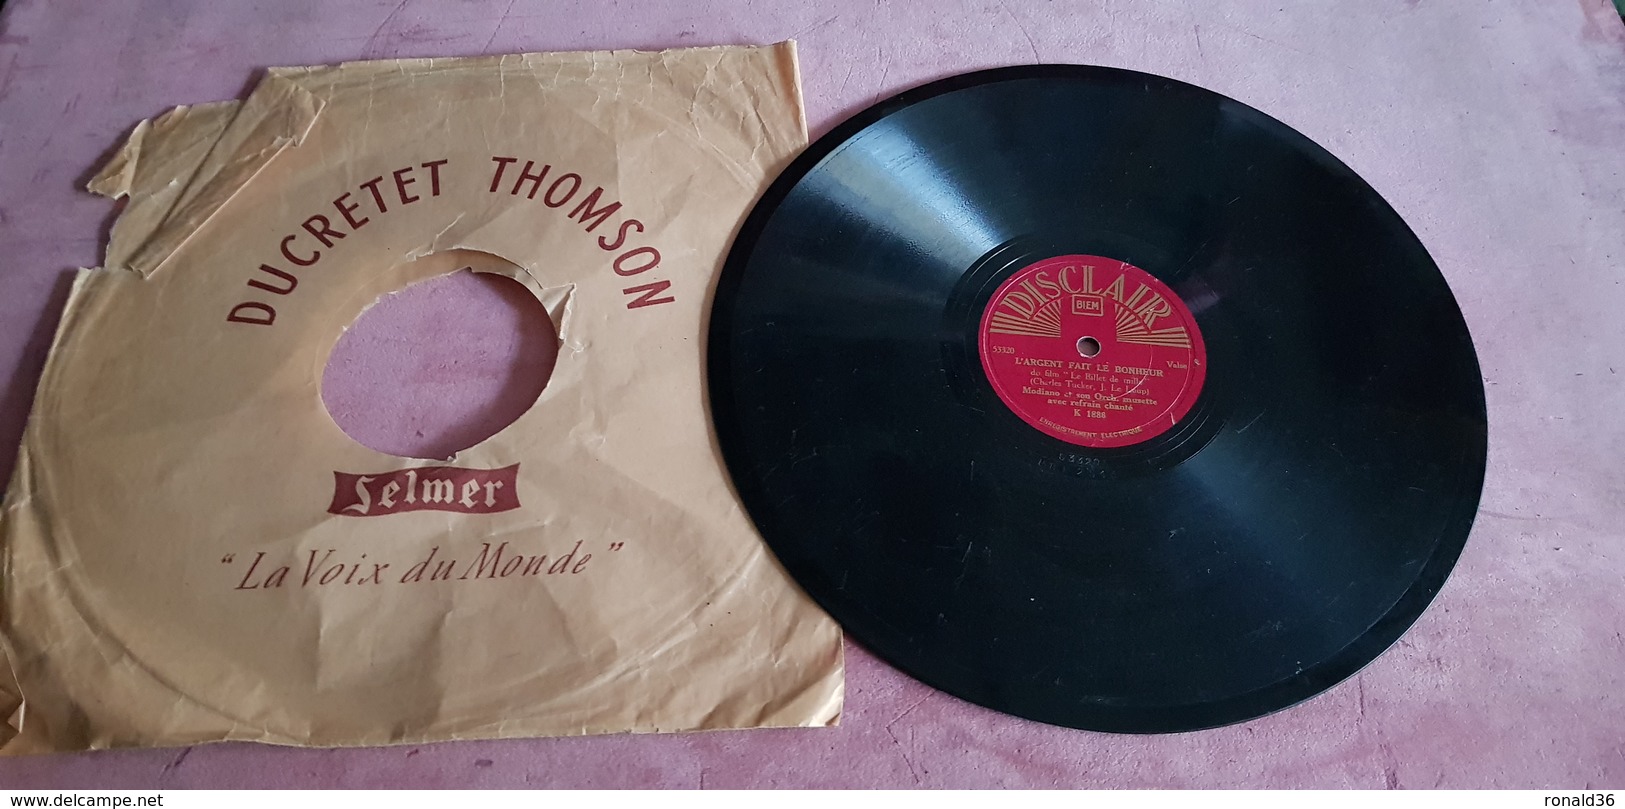 disque vinyle 78 t Musique de Film LE BILLET DE MILLE : L'ARGENT FAIT LE  BONHEUR et L'AUBERGE DU PETIT DRAGON : UN COUP